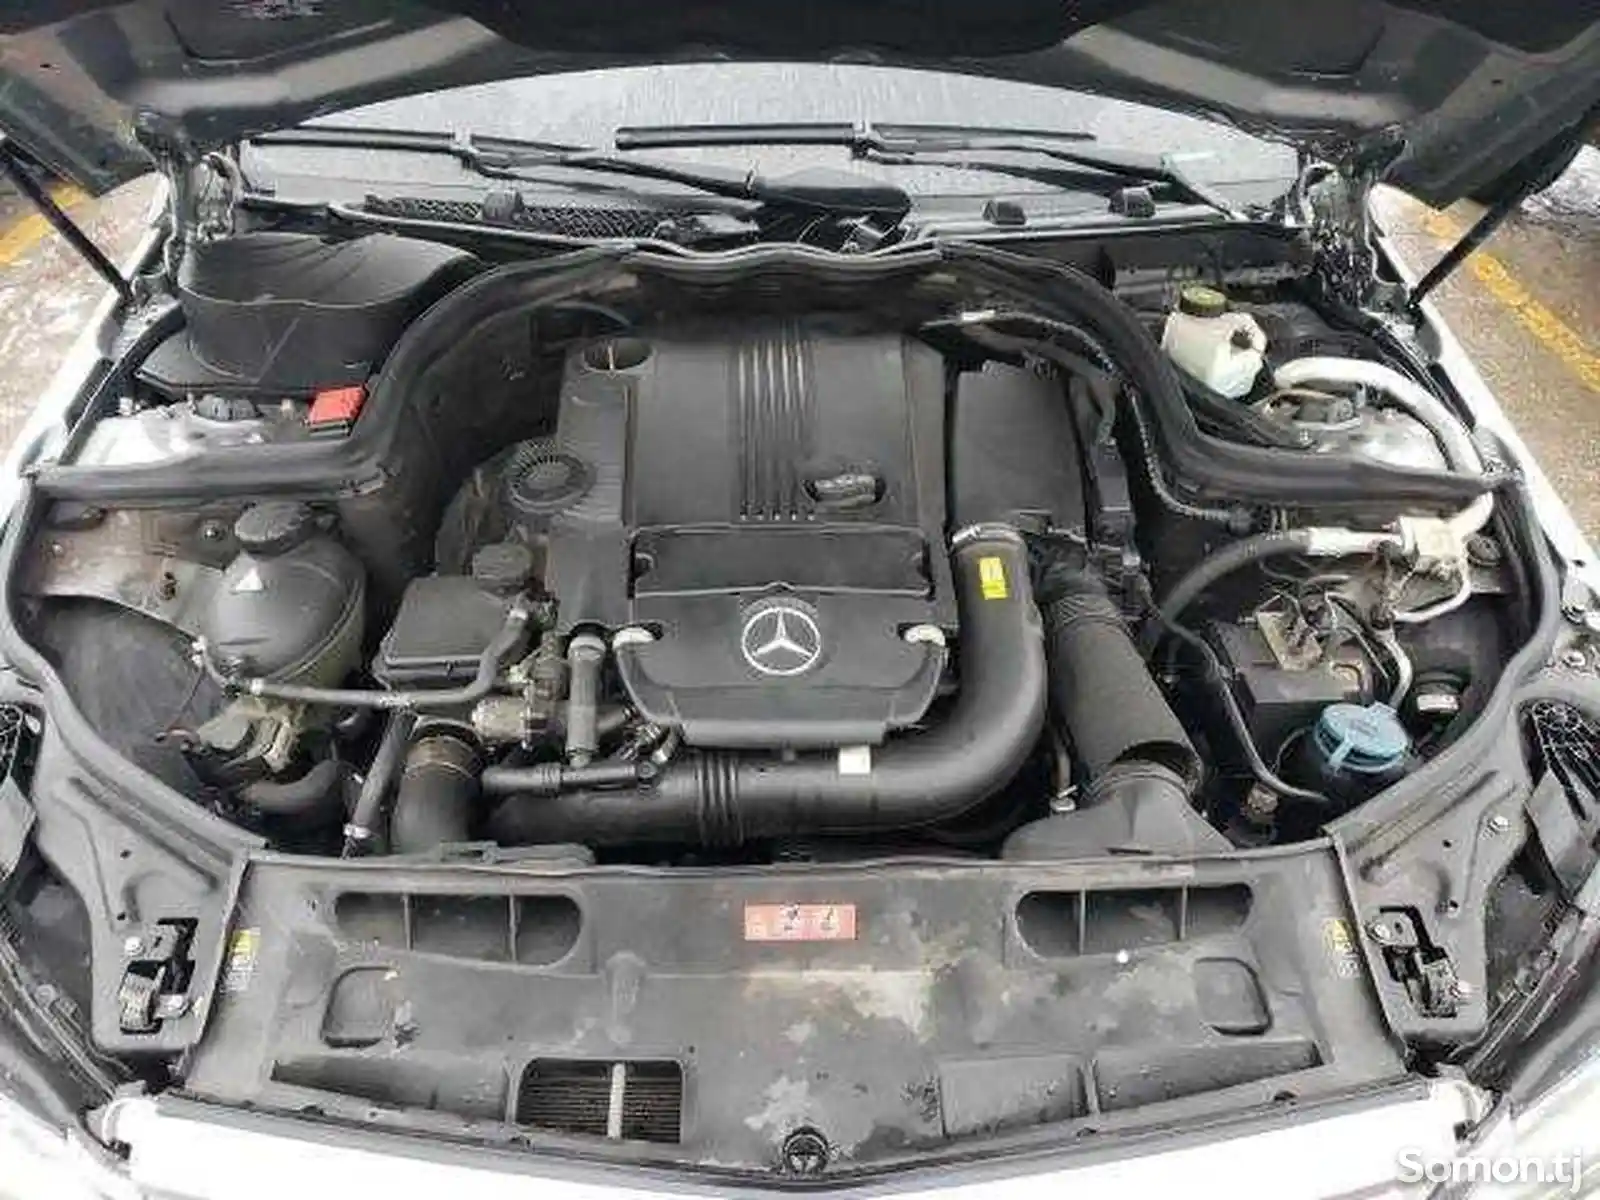 Mercedes-Benz C class, 2012-15